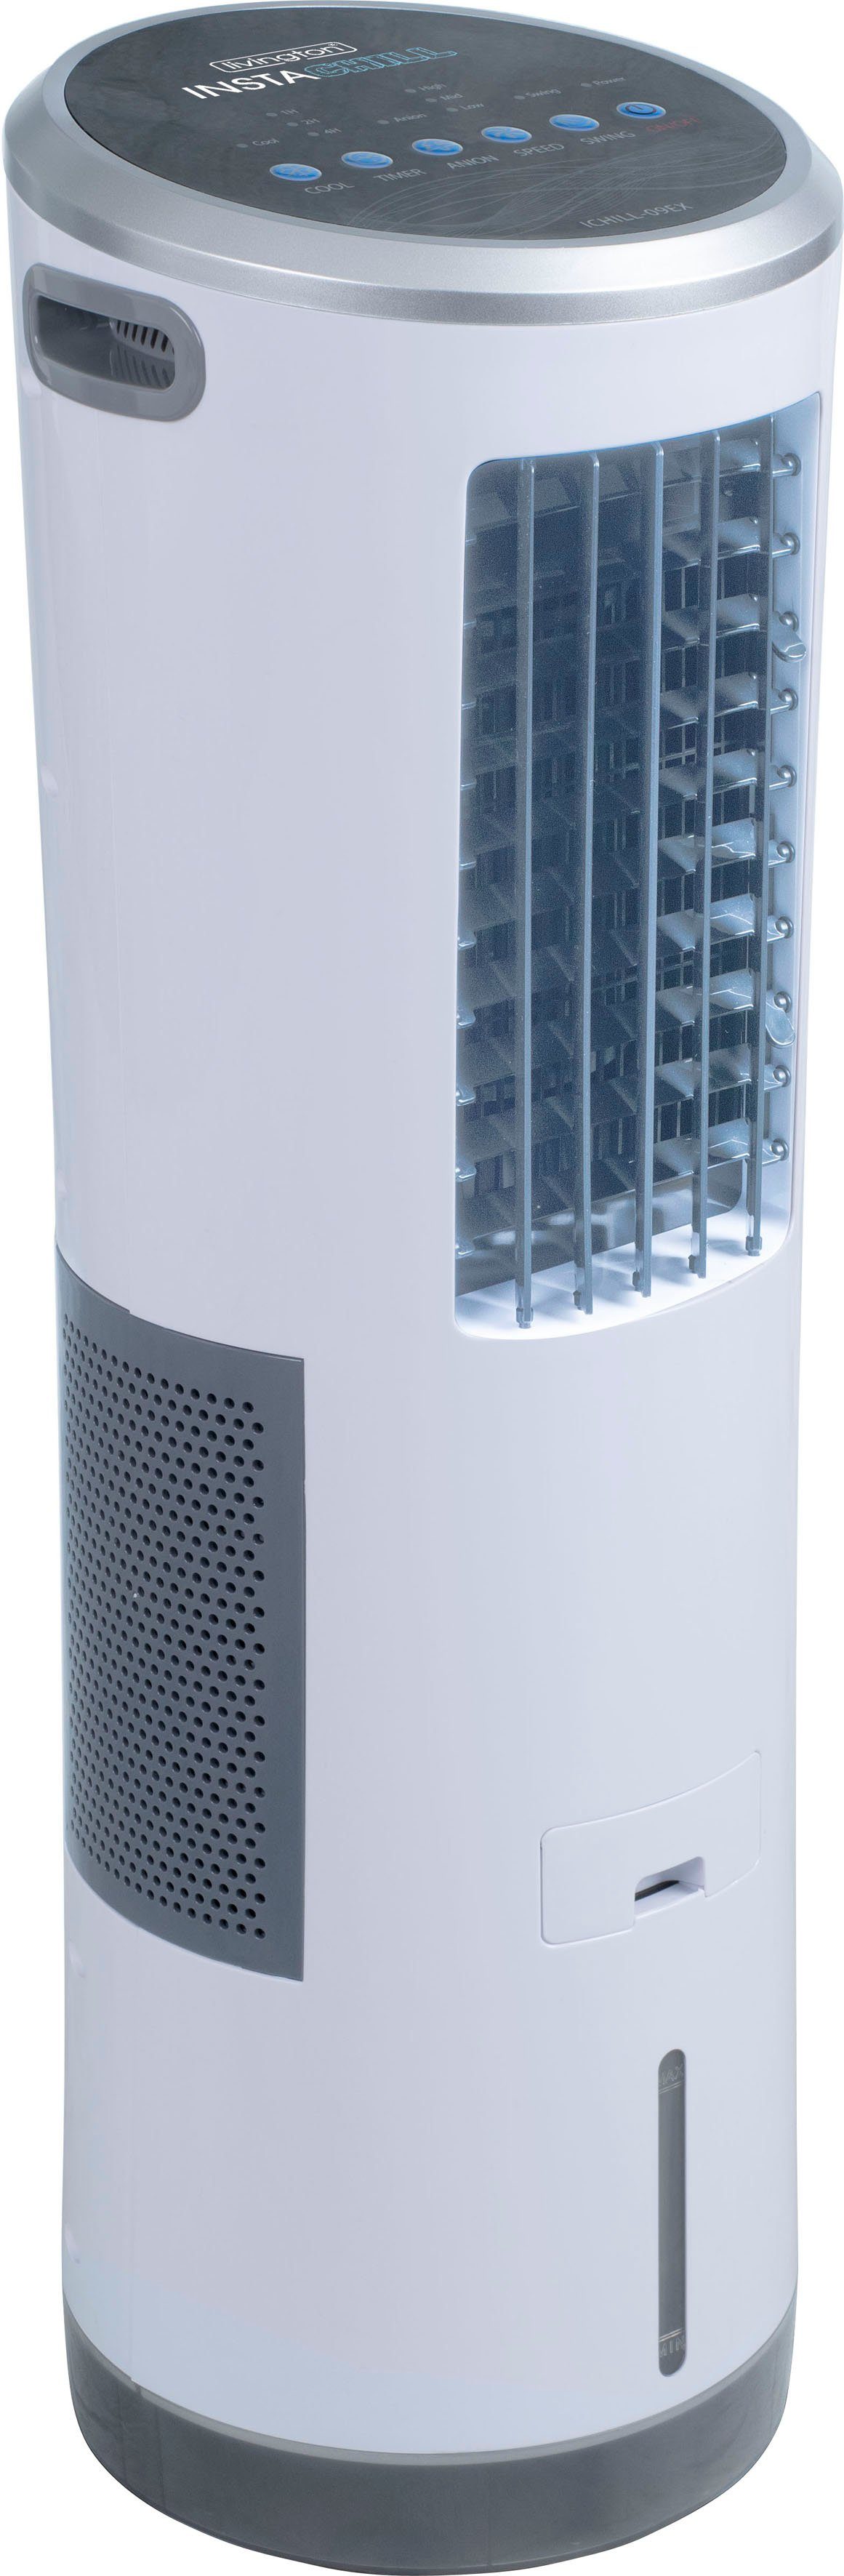 Ventilatorkombigerät Fassungsvermögen 8,5 InstaChill, l Luftkühler, MediaShop